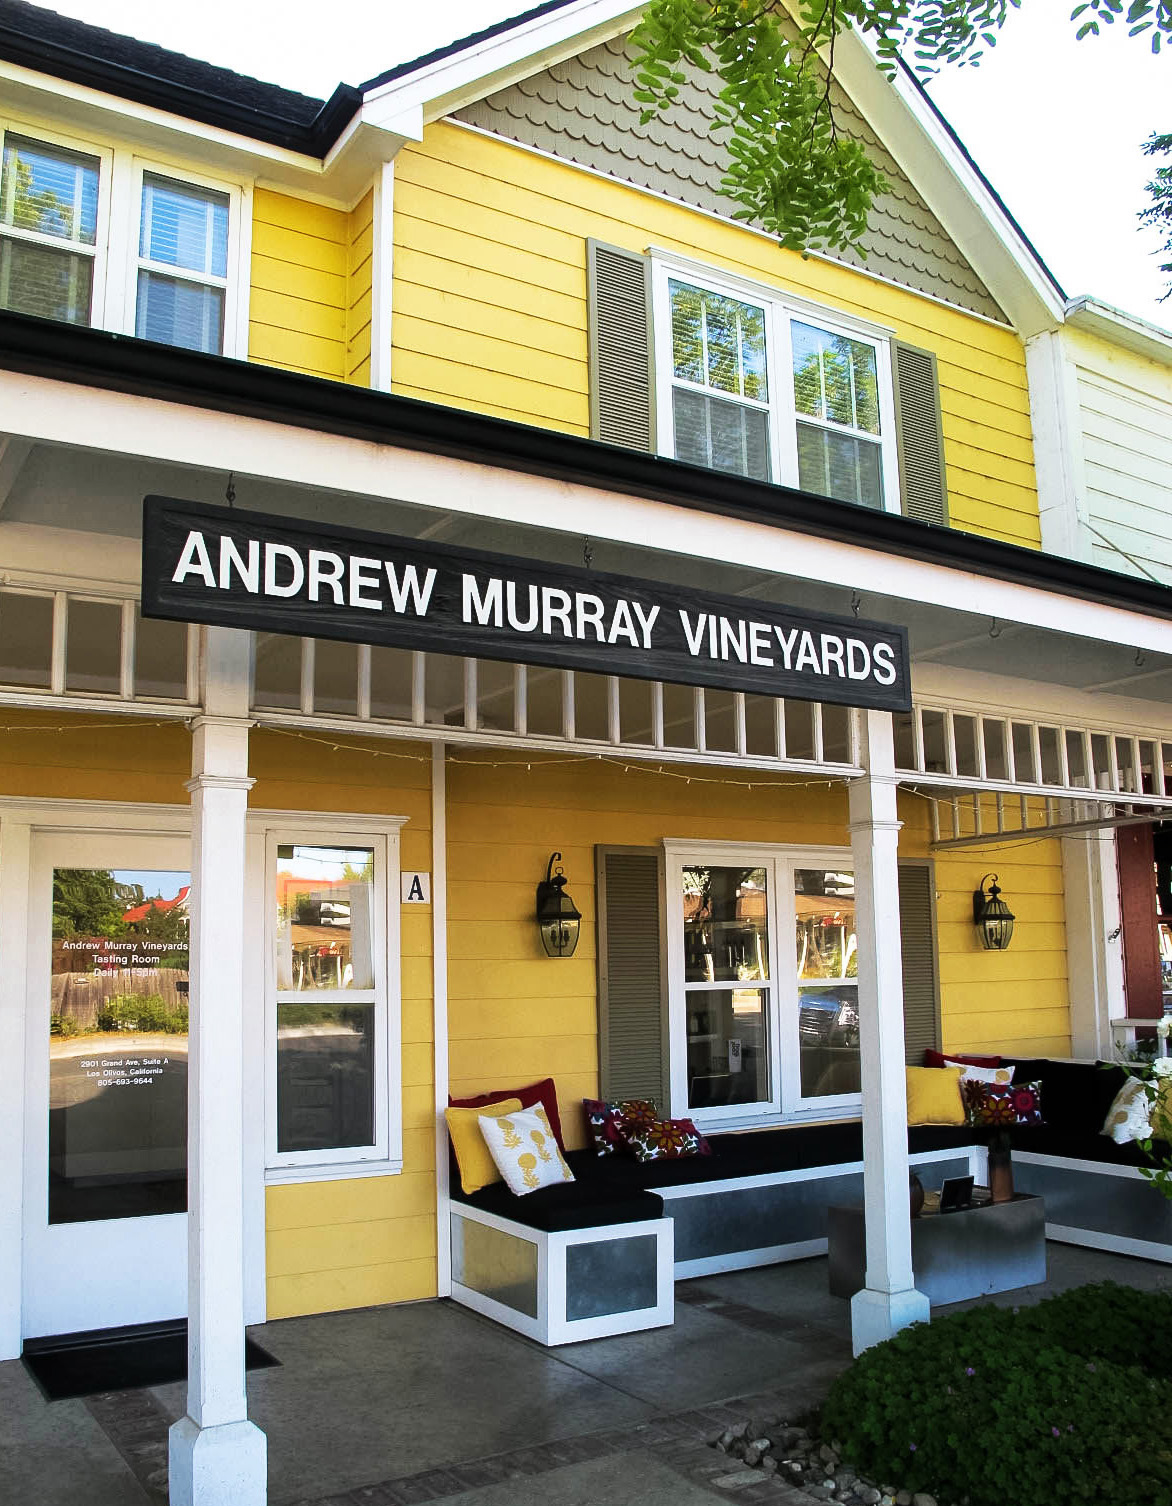 Andrew Murray Vineyards